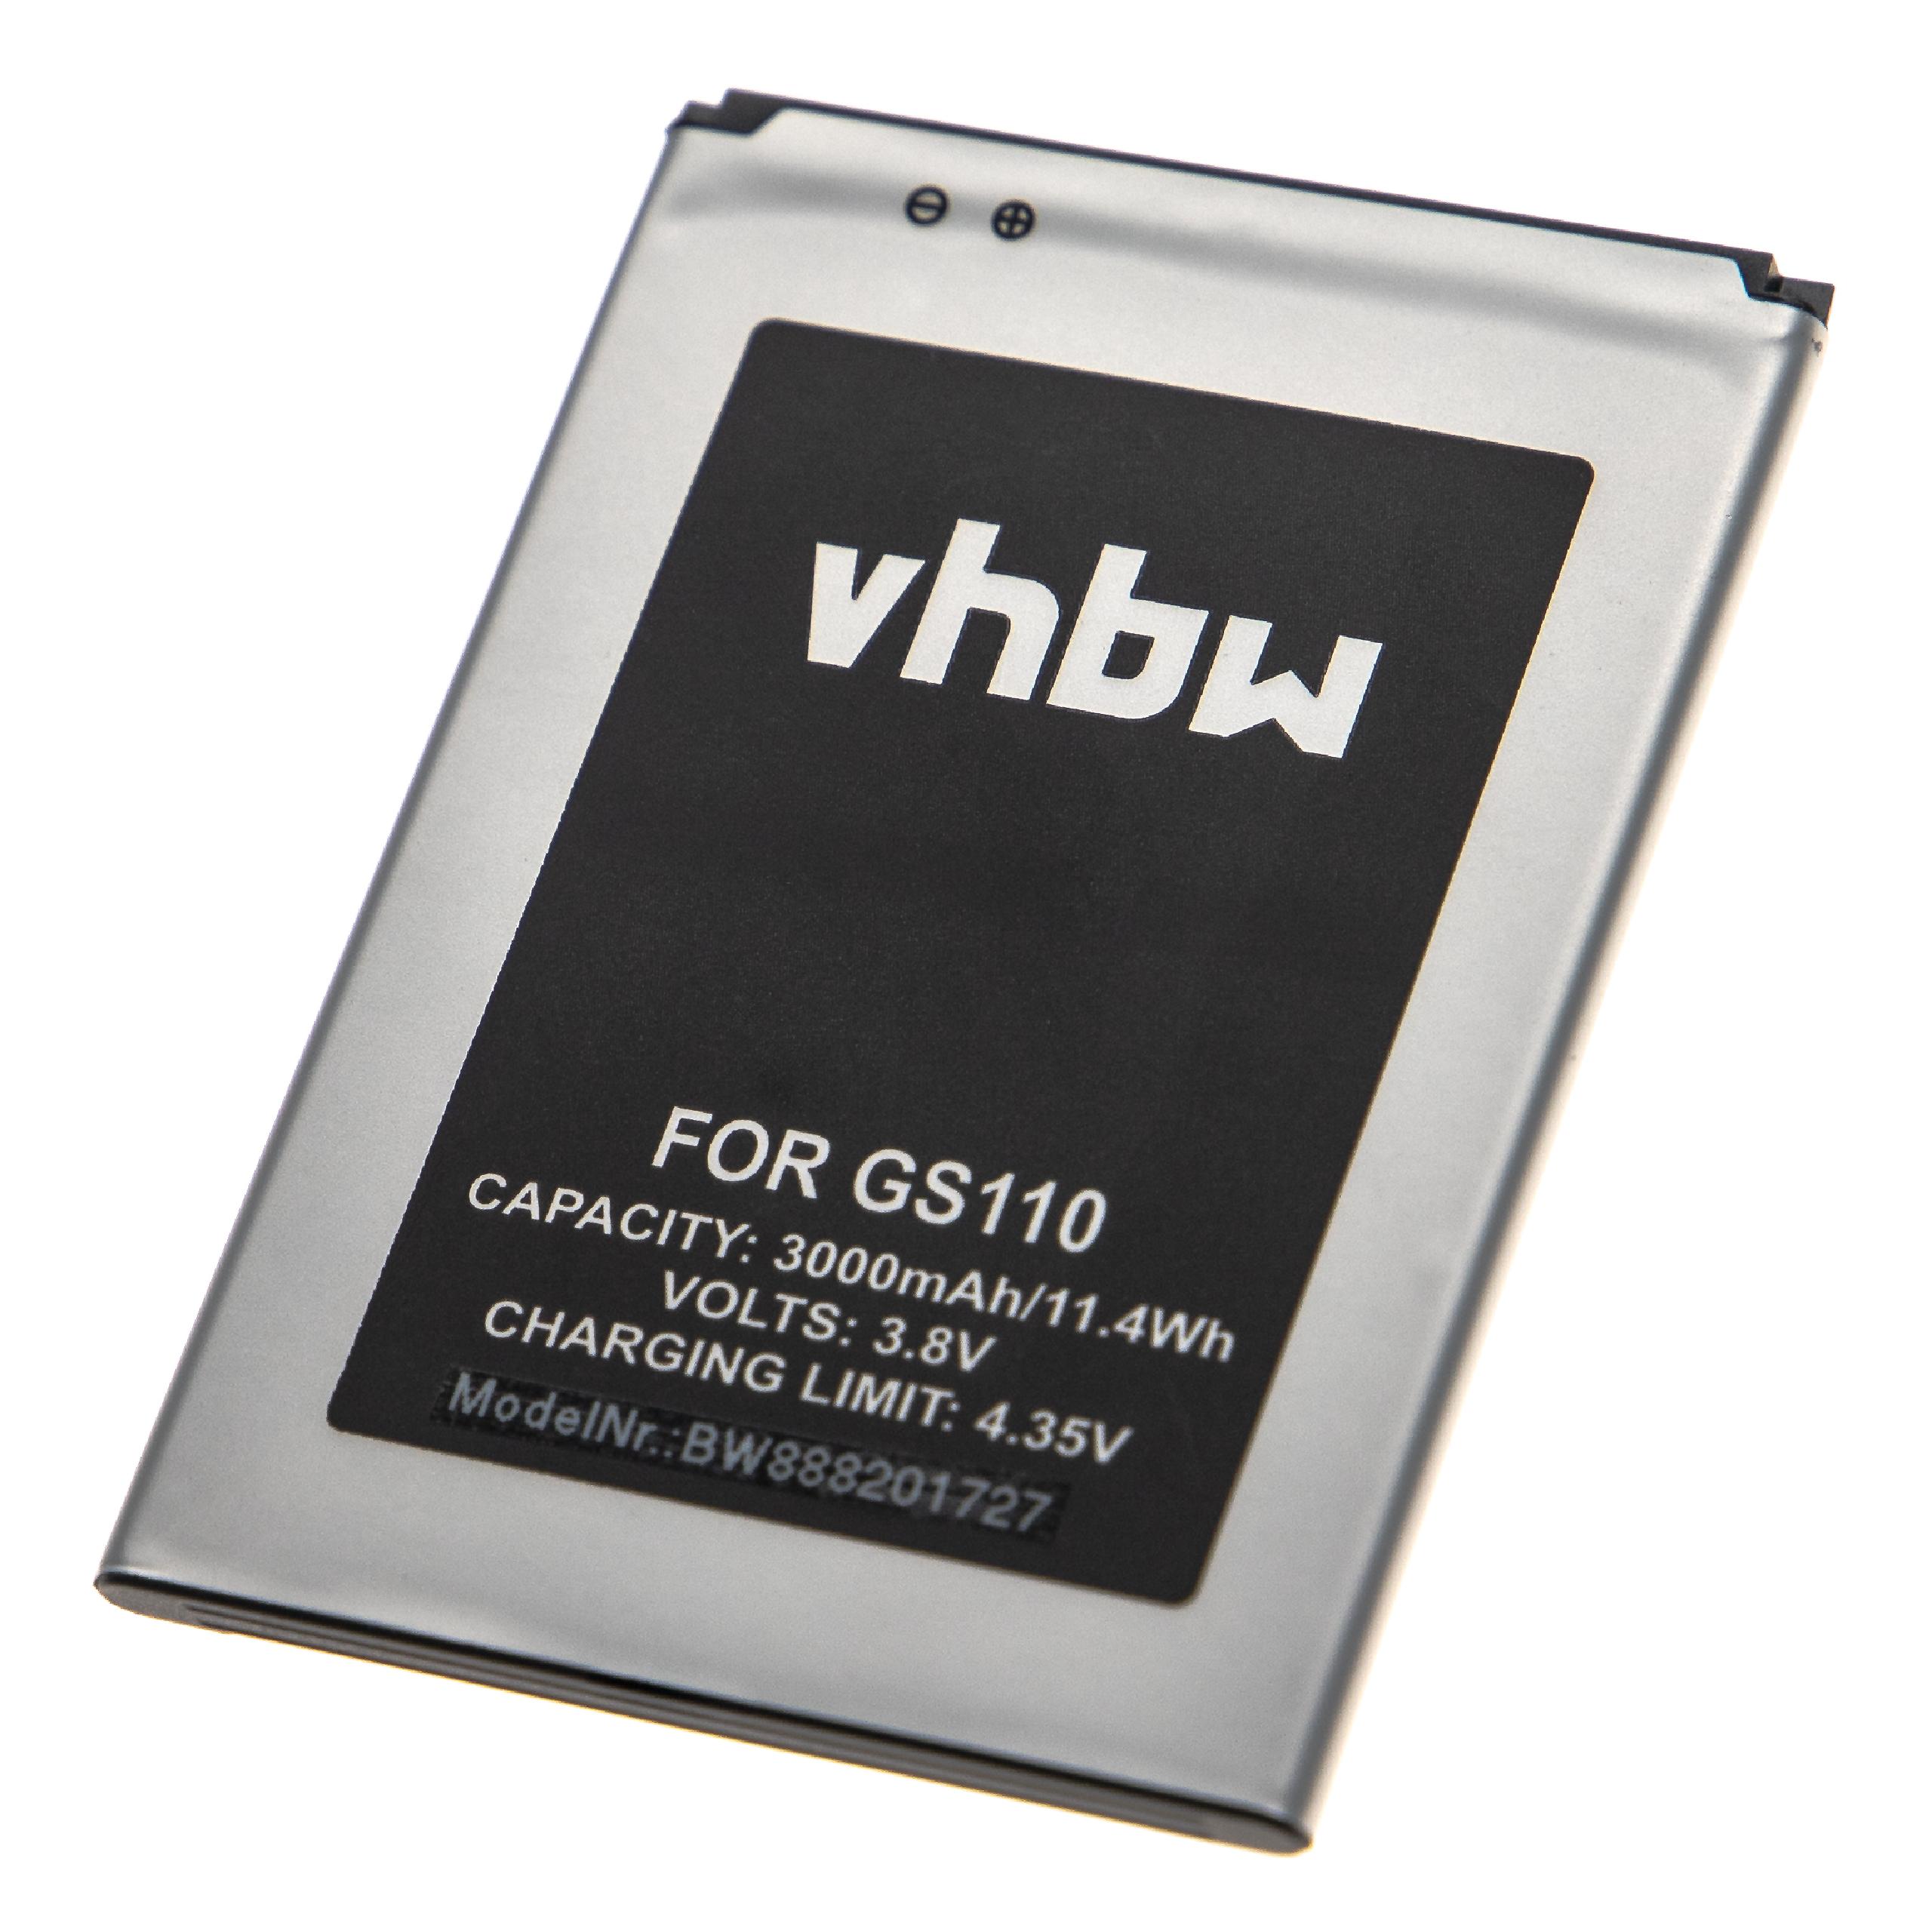 Batería reemplaza Gigaset V30145-K1310-X471 para móvil, teléfono Gigaset - 3000 mAh 3,8 V Li-Ion